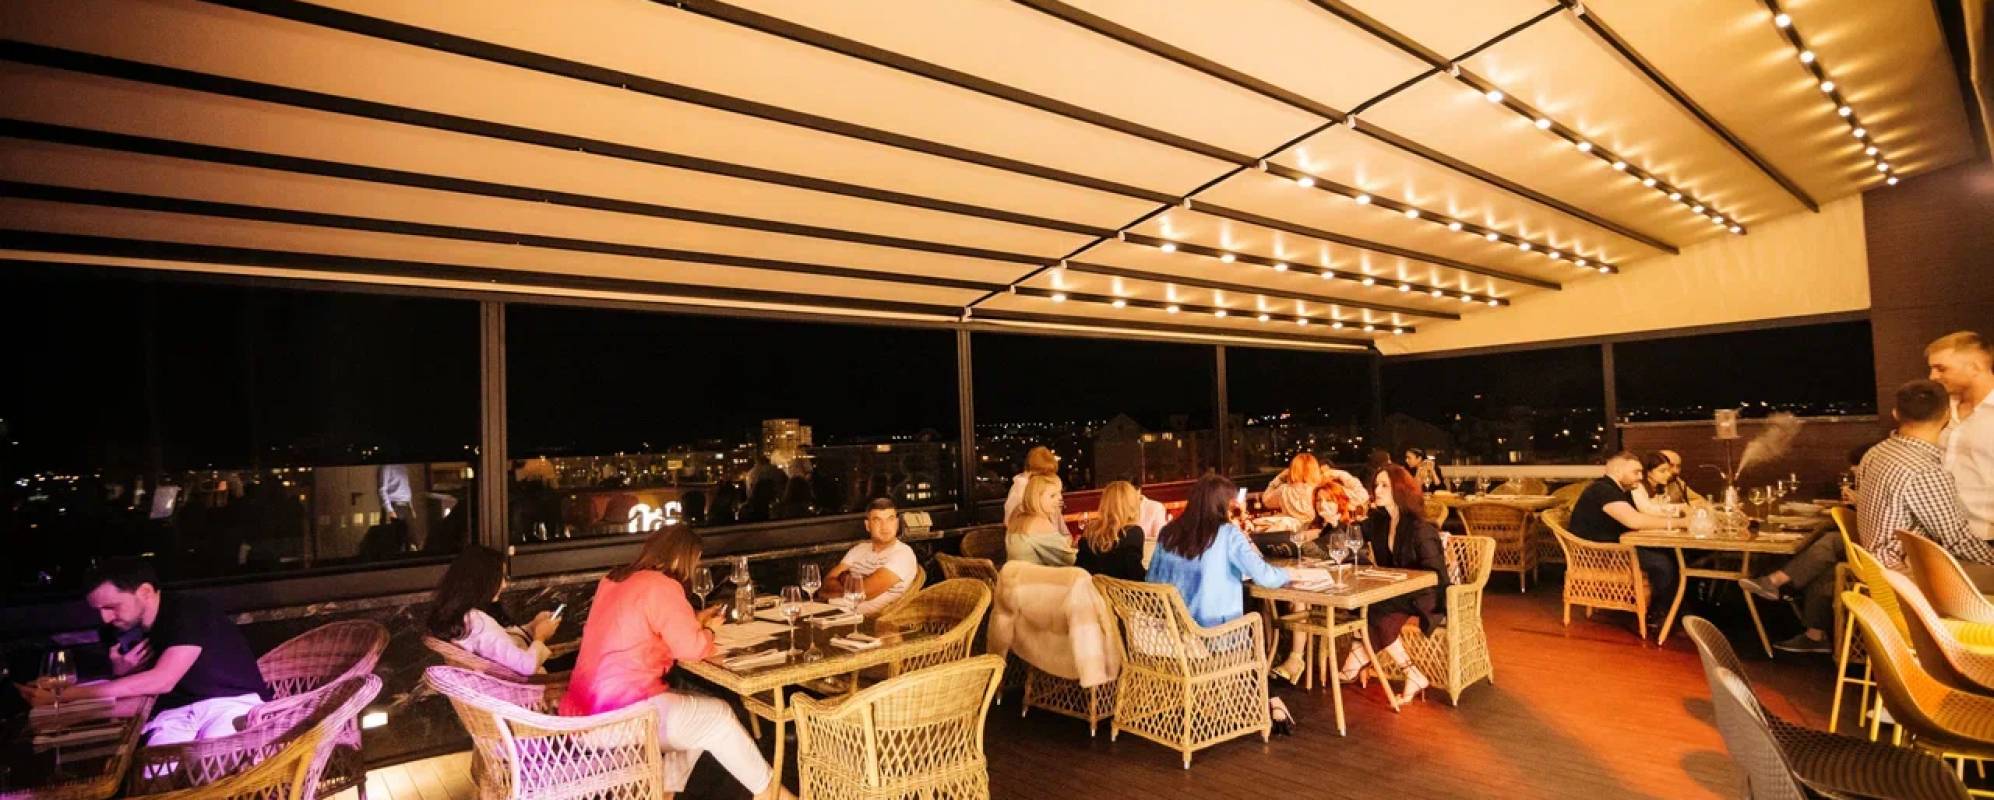 Фотографии ресторана Панорамный ресторан «360»